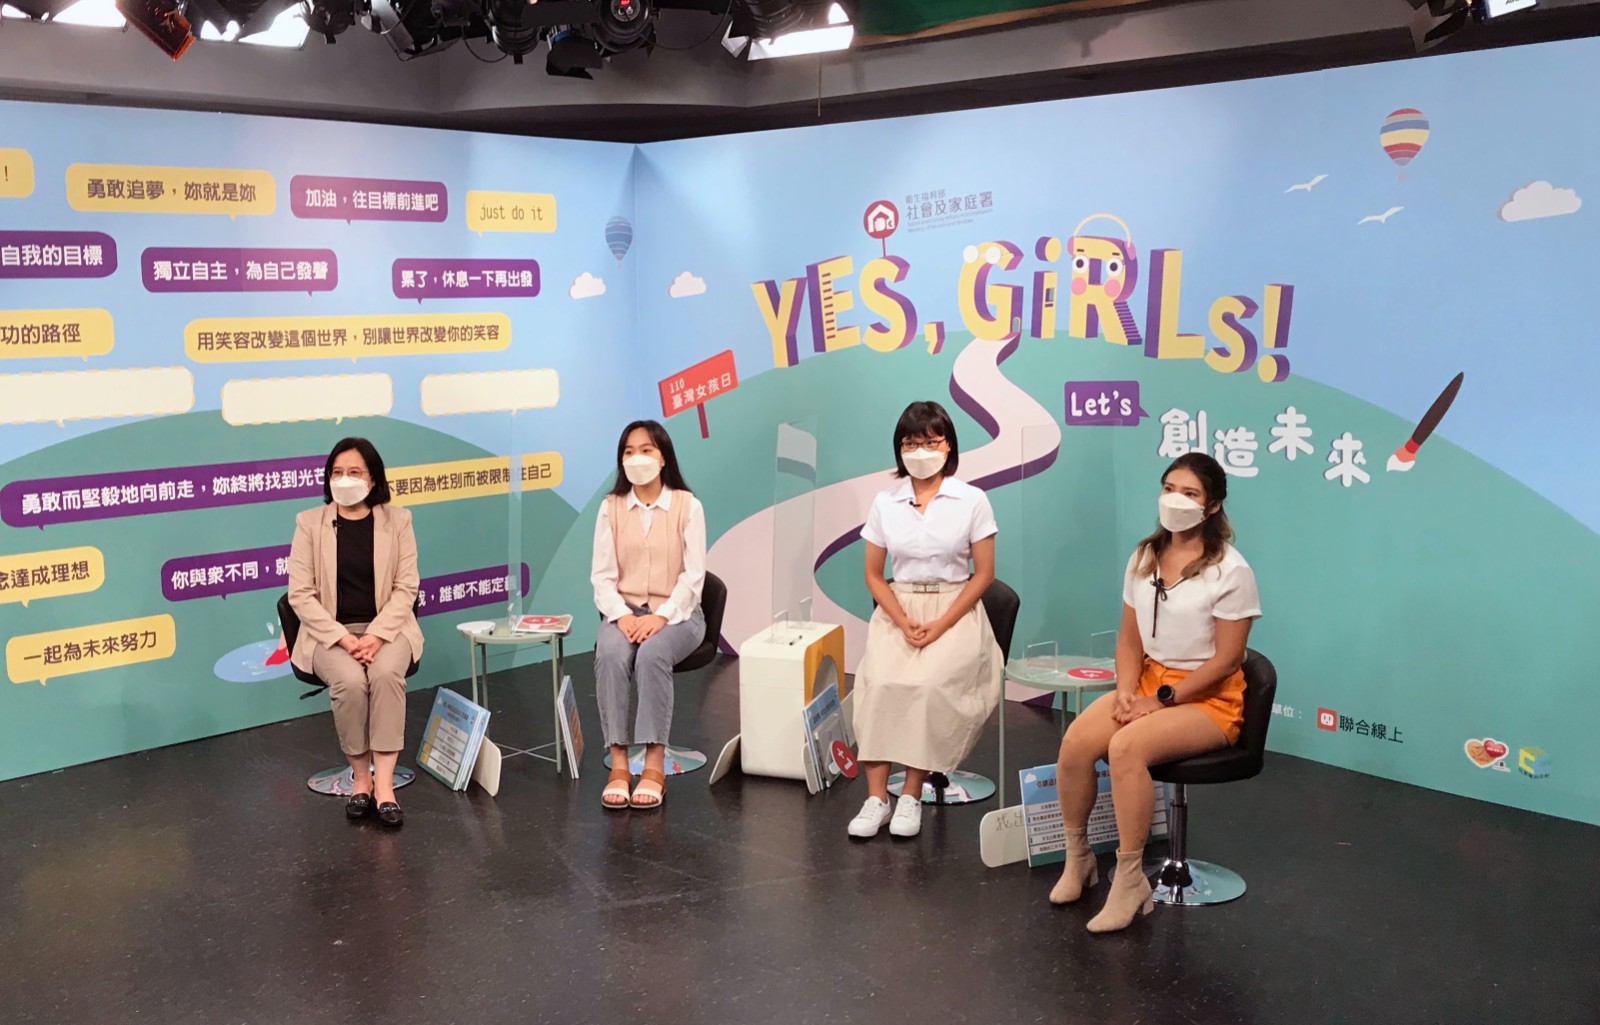 臺灣女孩日線上論壇 開箱「2021臺灣青少年世代意見調查」結果